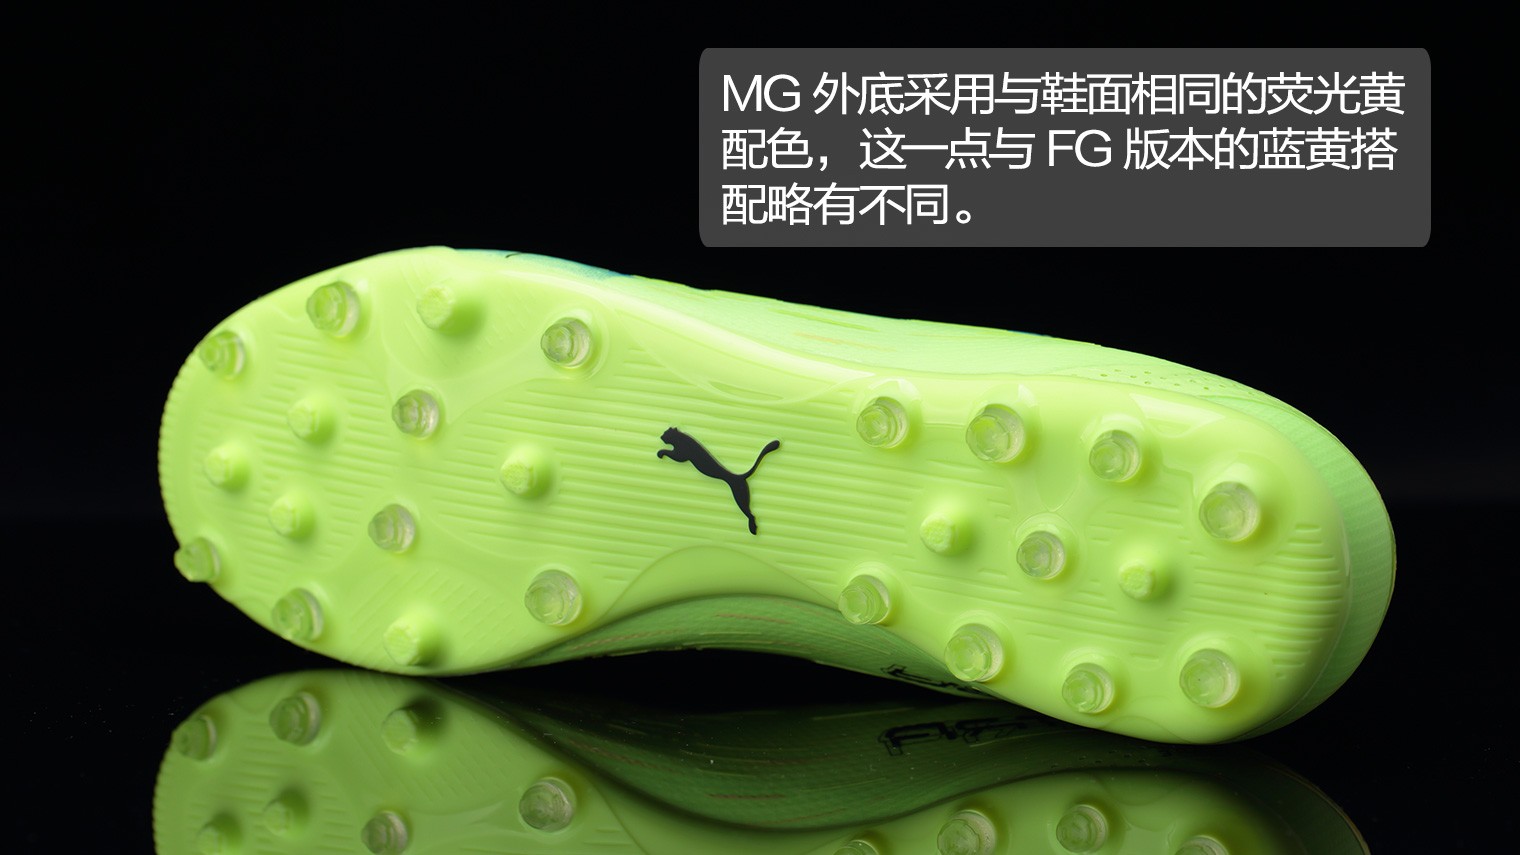 耐克推出Mercurial Superfly GS 360 - Nike_耐克足球鞋 - SoccerBible中文站_足球鞋_PDS情报站